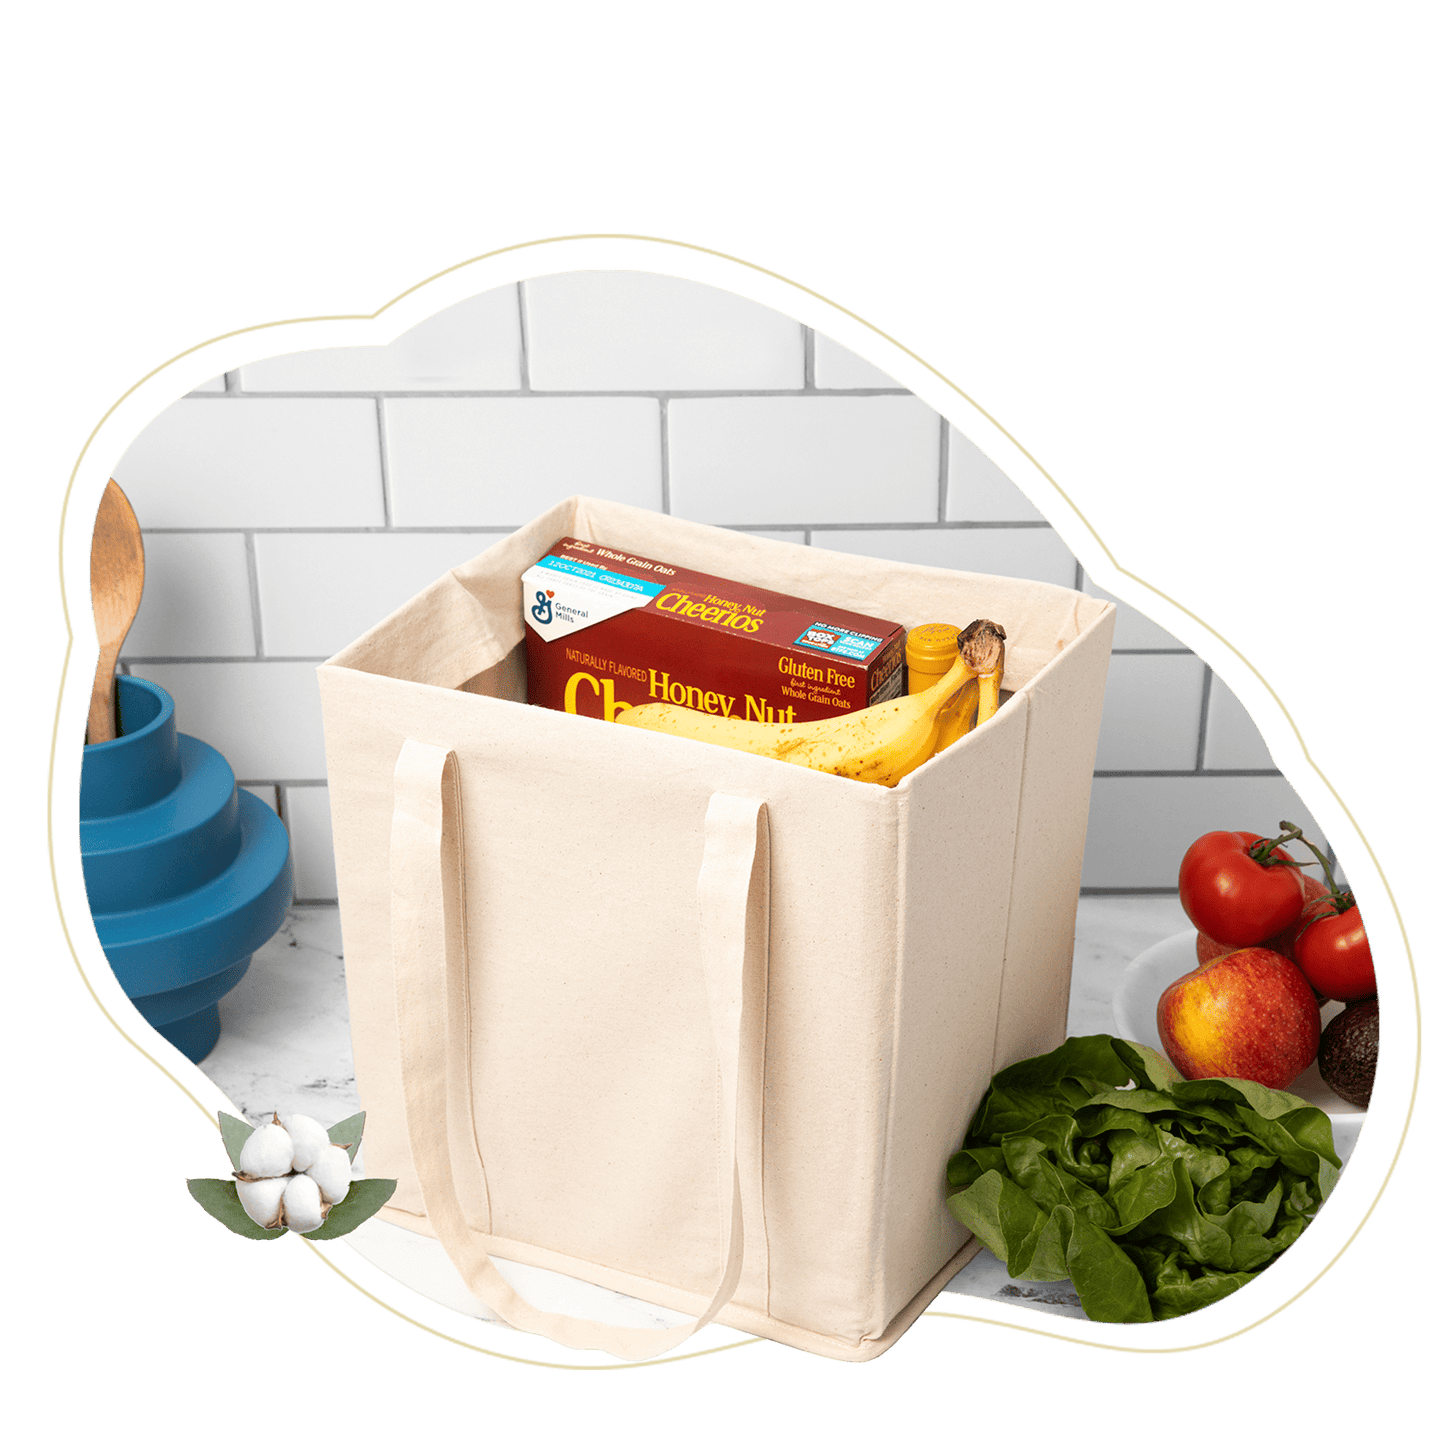 4 Packs Reusable Grocery Shopping Bag w/ bottle holder, Hard bottom,  Foldable, Multipurpose